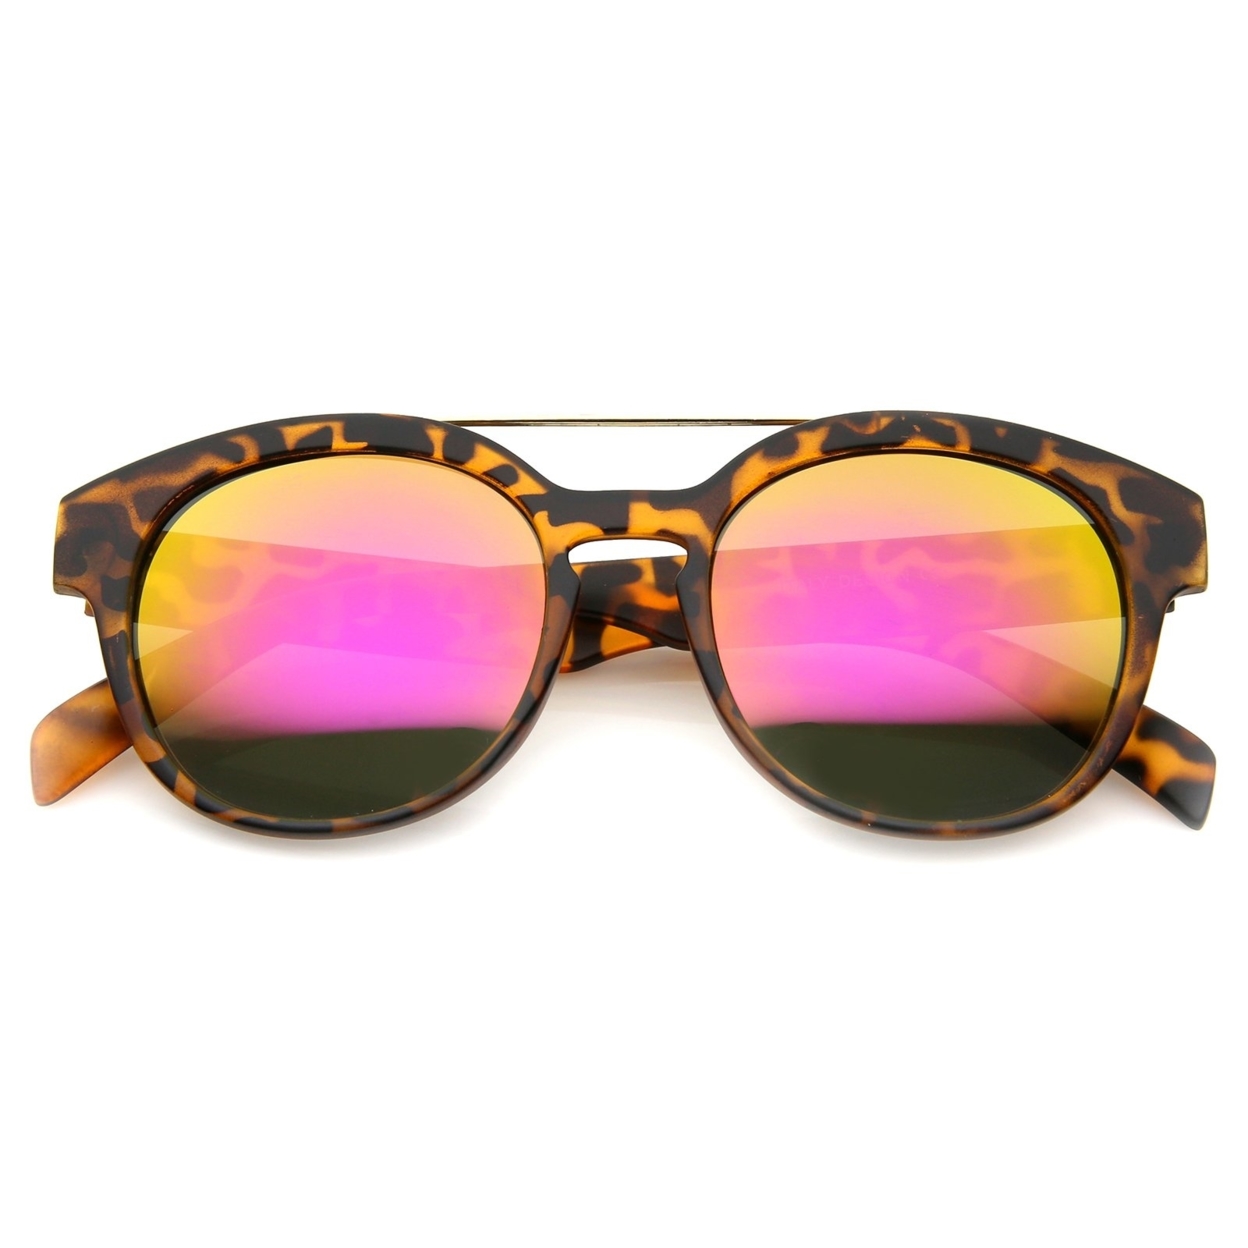 Modern Slim Metal Crossbar Iridescent Lens Horn Rimmed Sunglasses 51mm - Tortoise / Orange Mirror